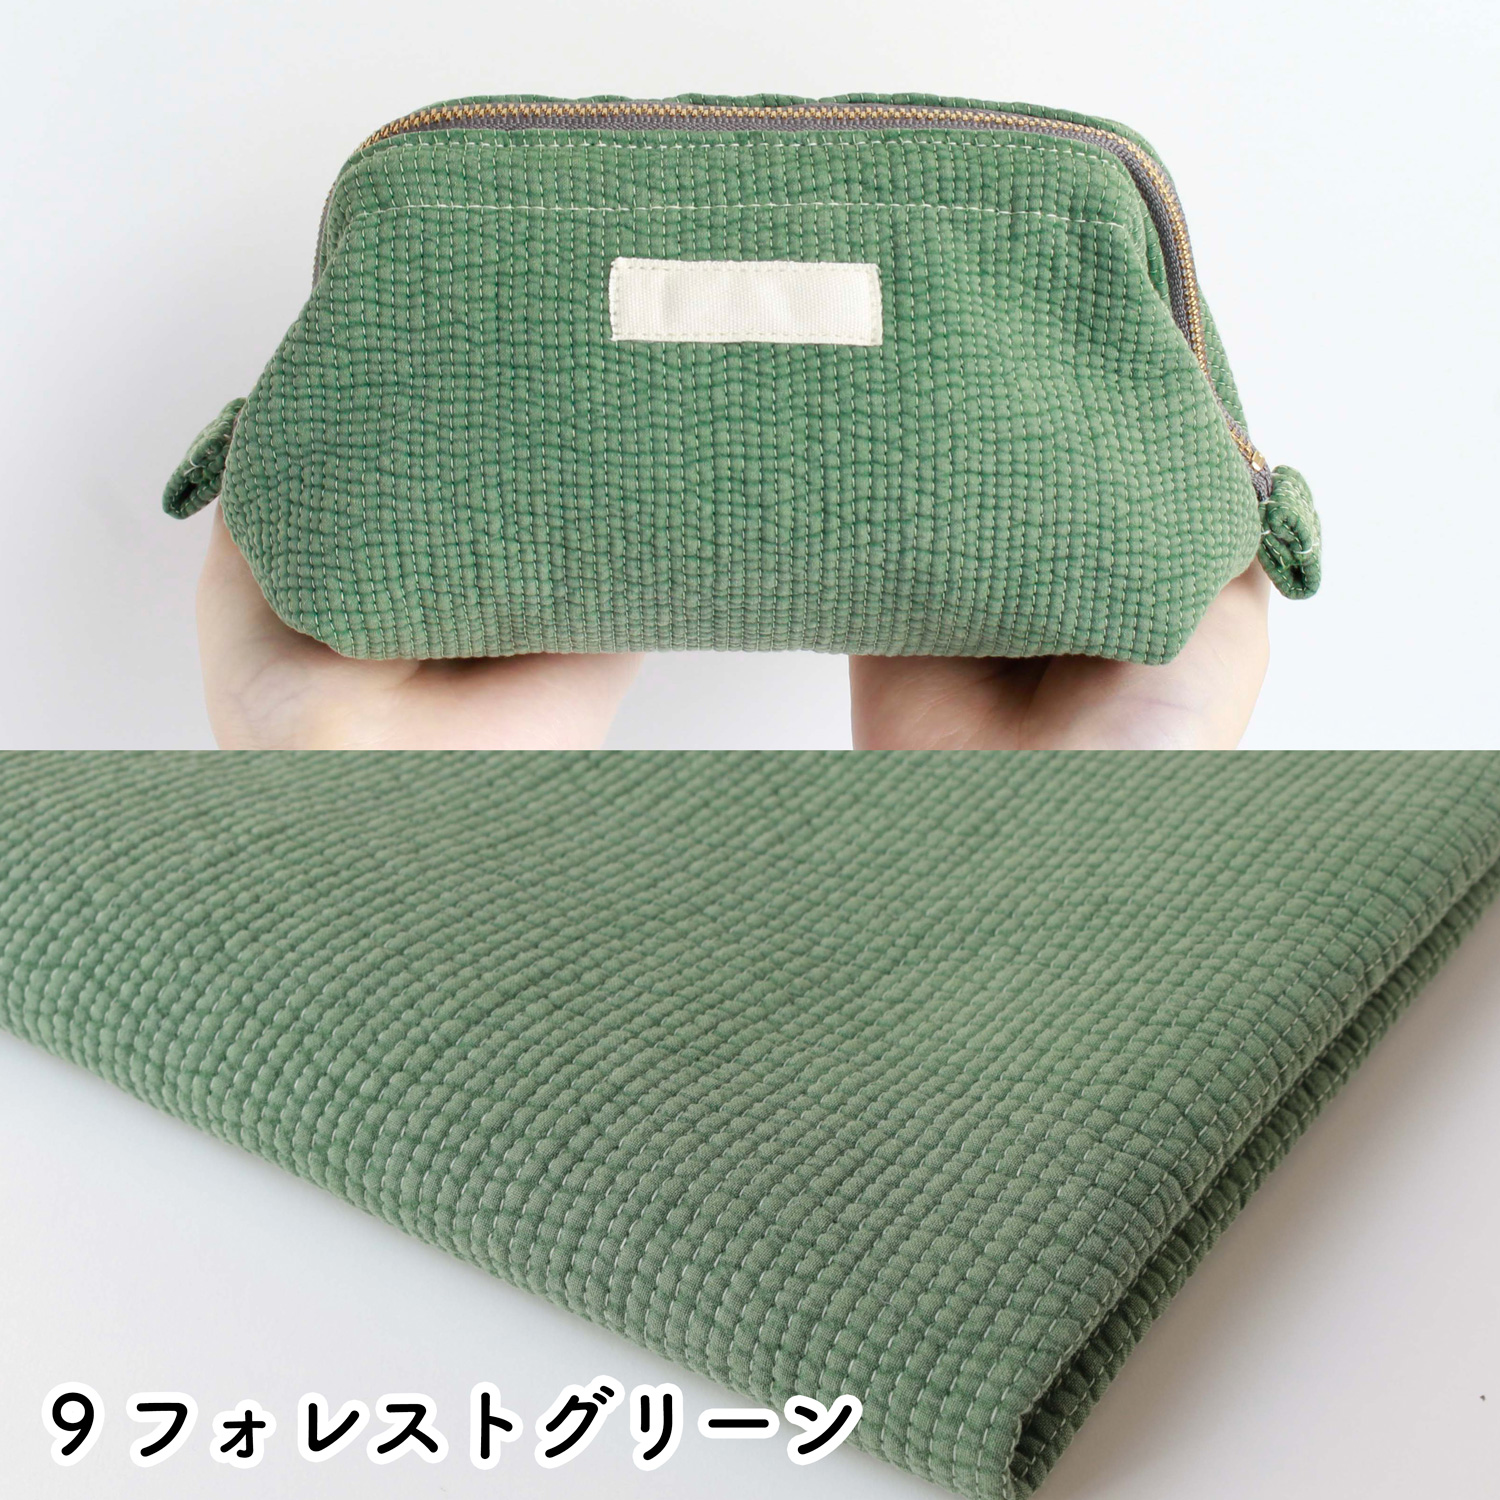 ■NBY303R nubi ヌビ 韓国伝統キルティング生地 巾3mmサイズ 原反約8m乱巻 (巻) 15